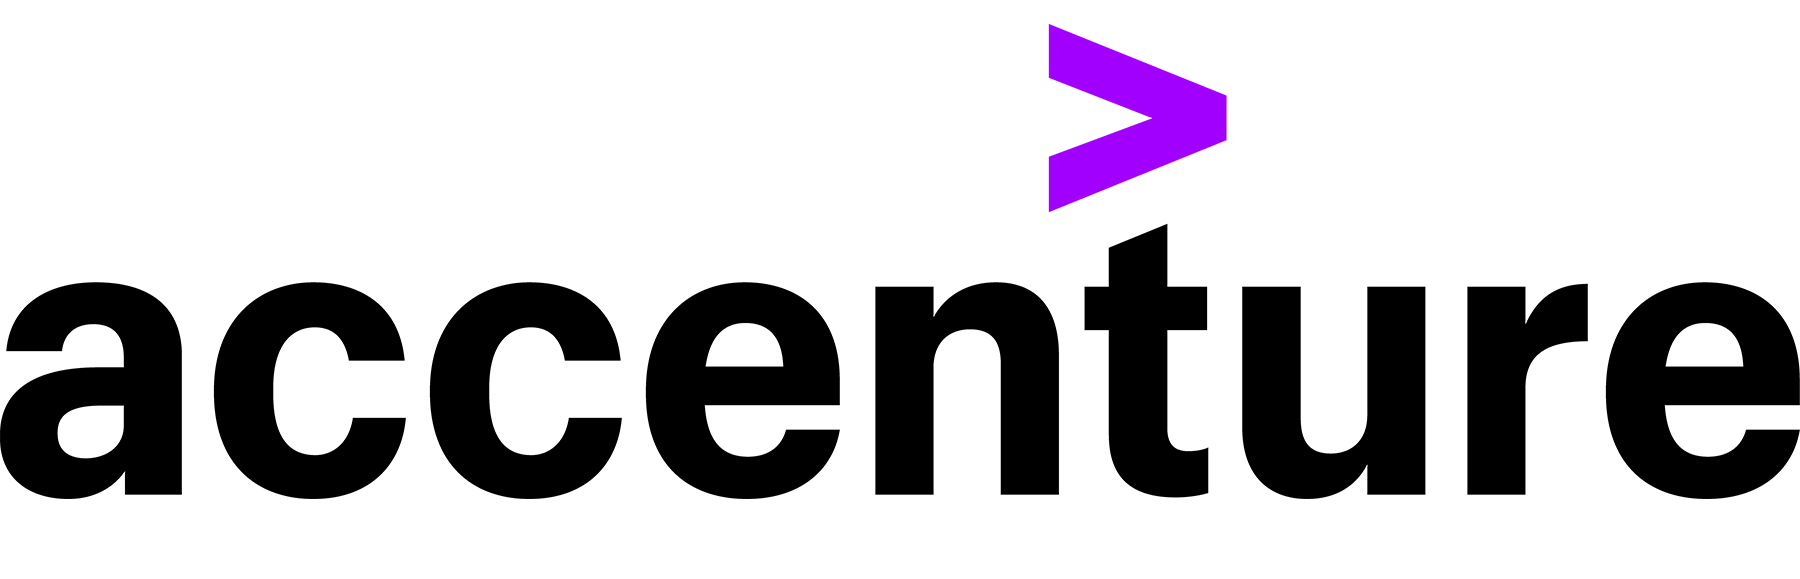 Accenture logo no background